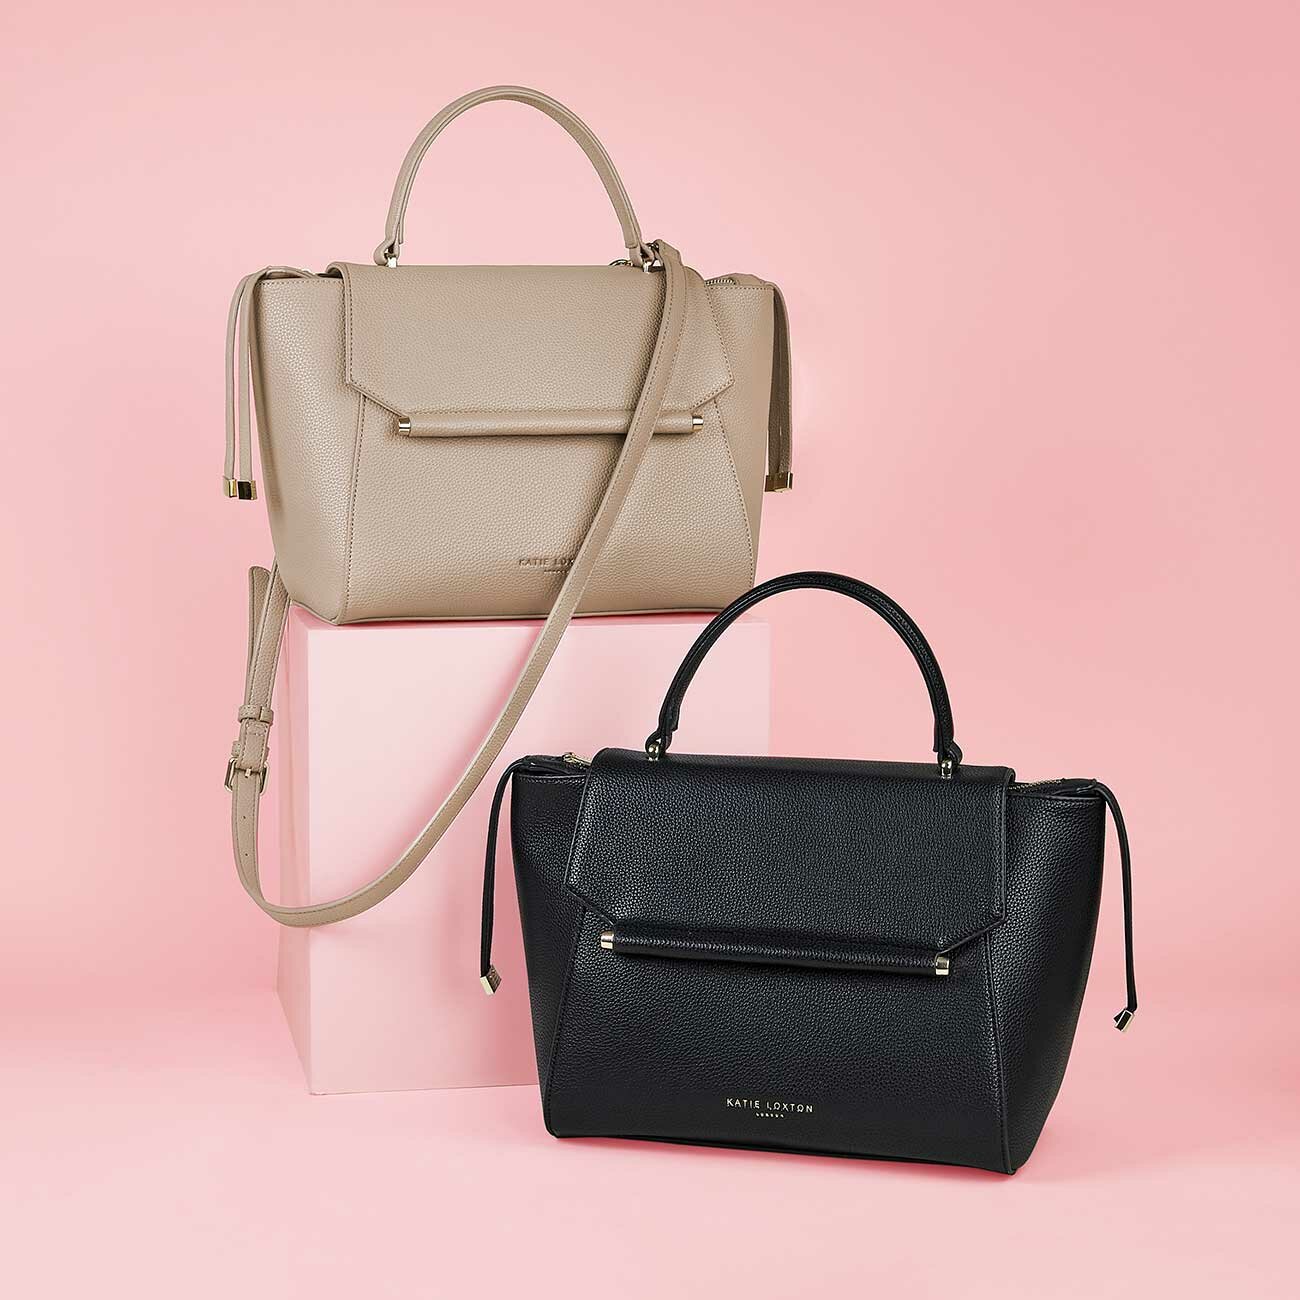 Ava Top Handle Bag – Kim Taylor and Company